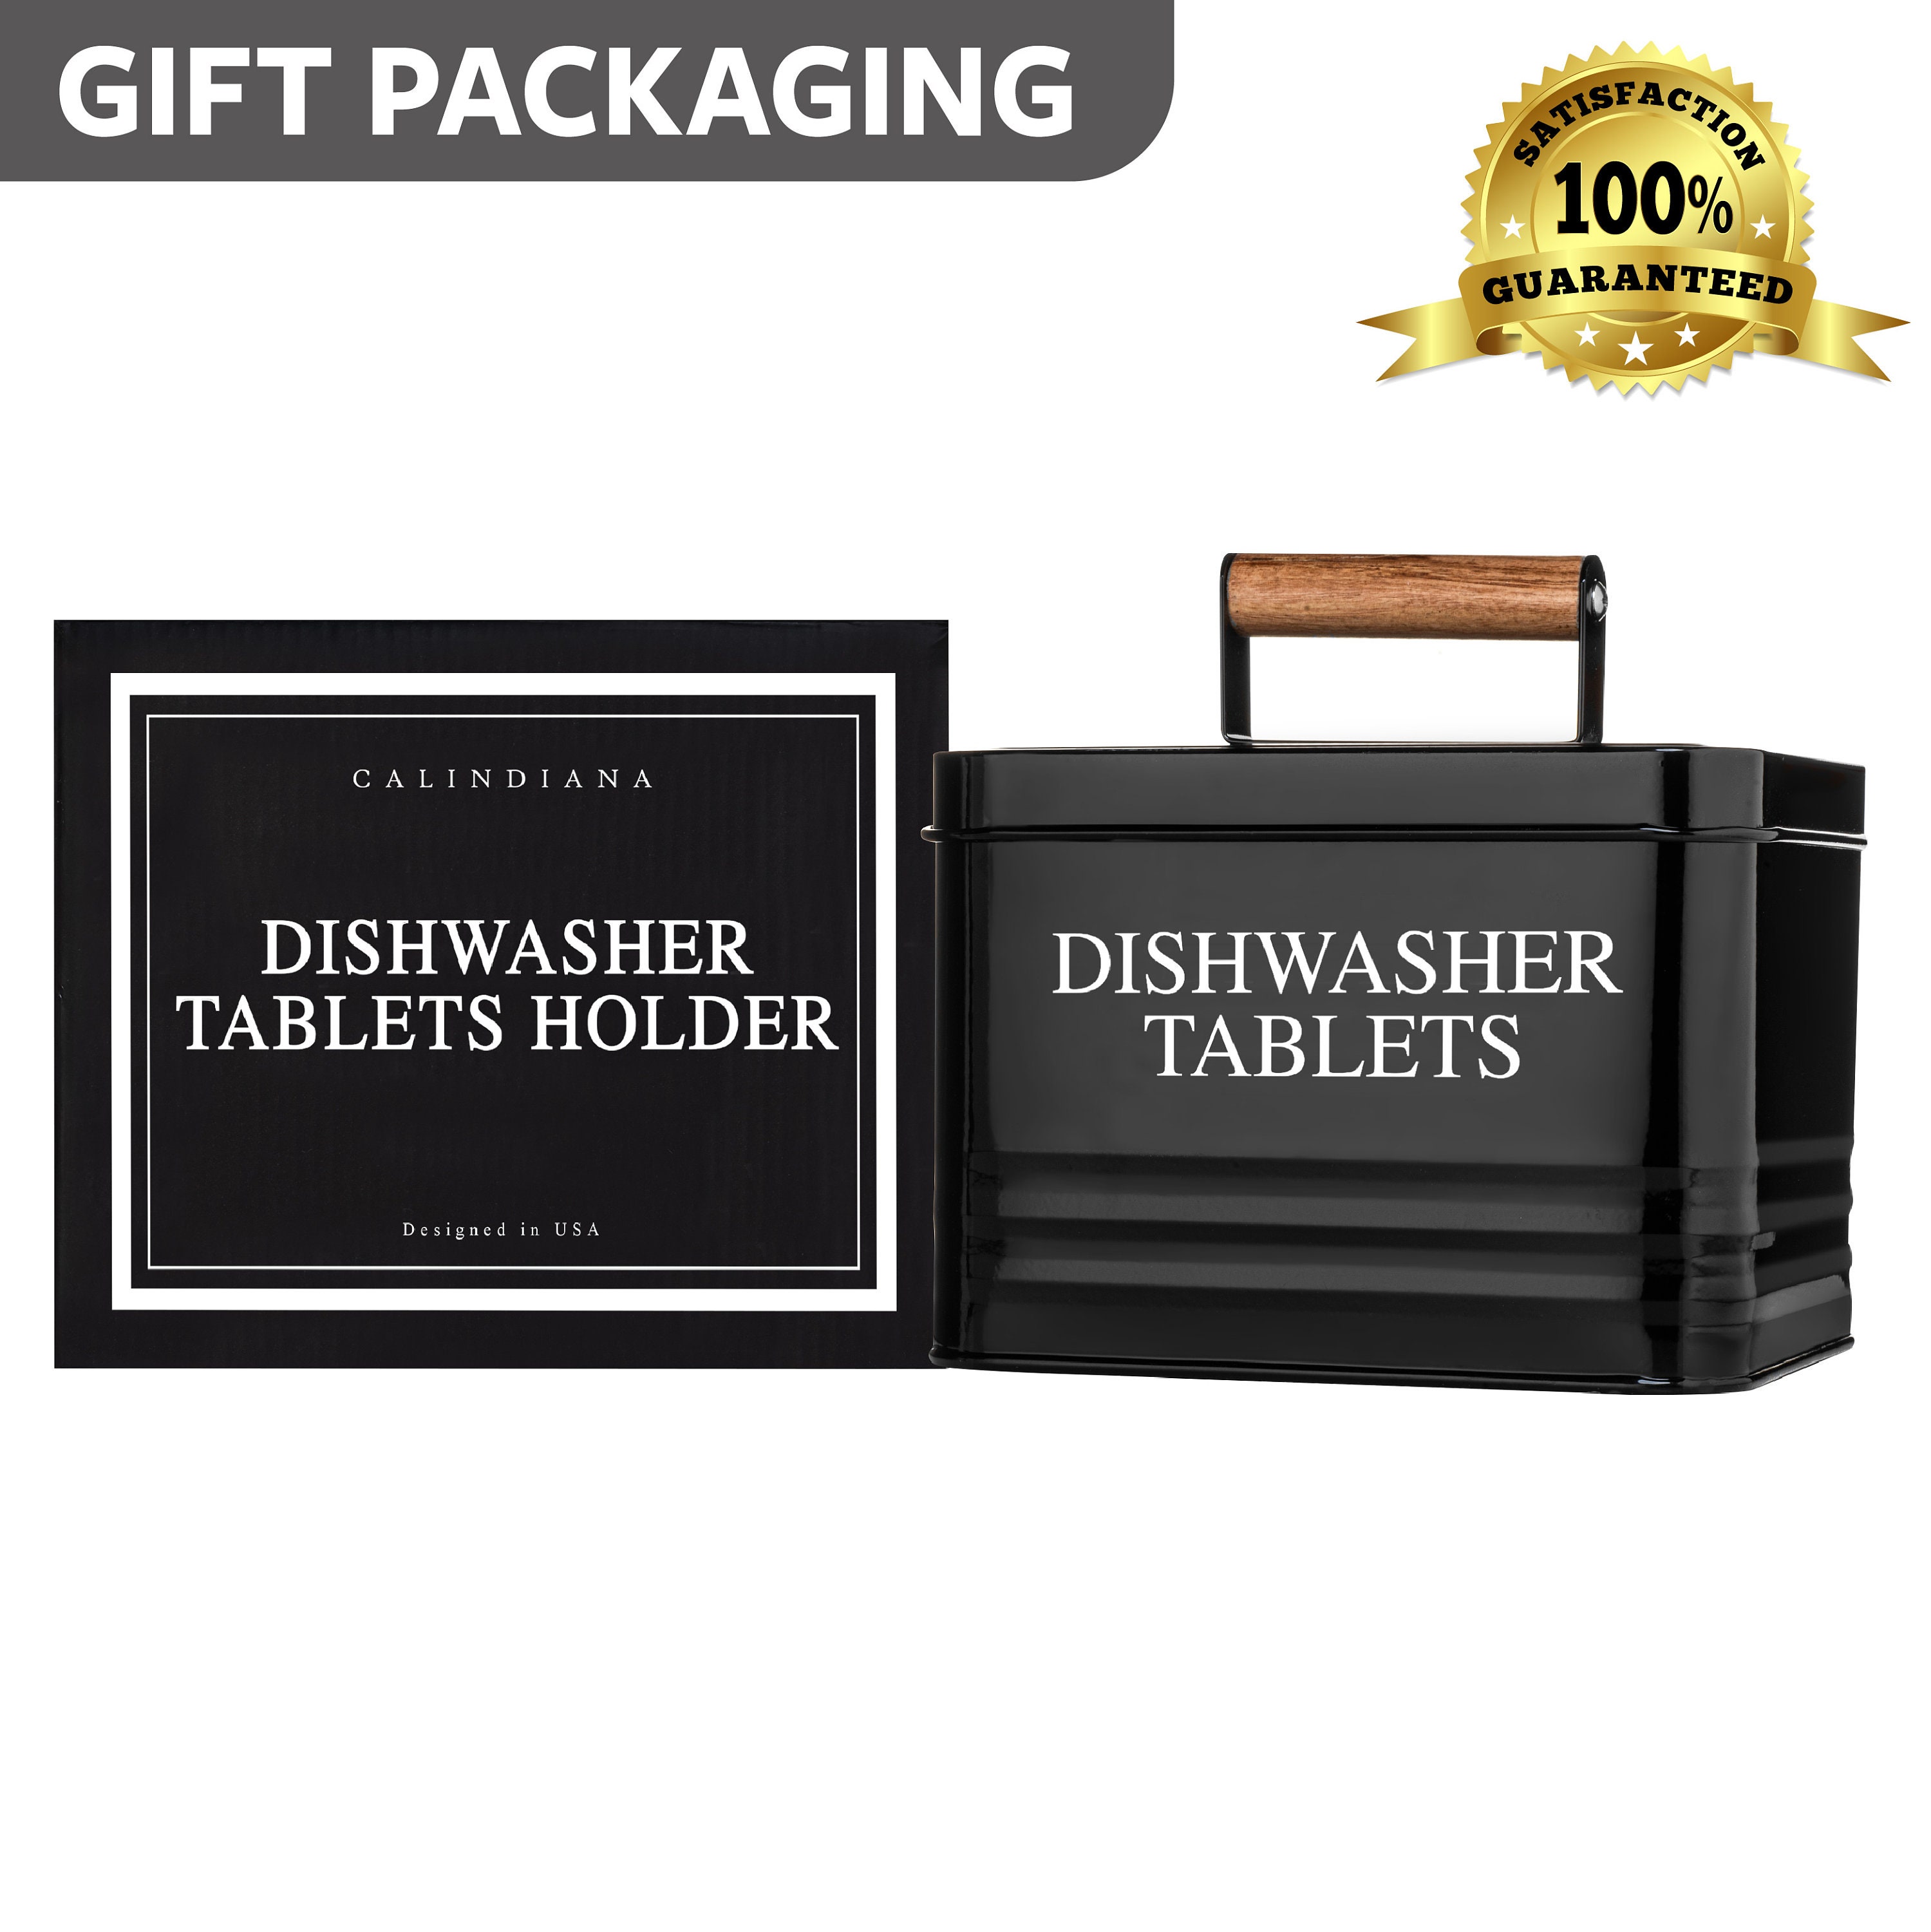 Dishwasher Detergent Pods Container, Modern Farmhouse Kitchen Home Decor,  Kitchen Organization and Storage Countertop, Housewarming Gift 